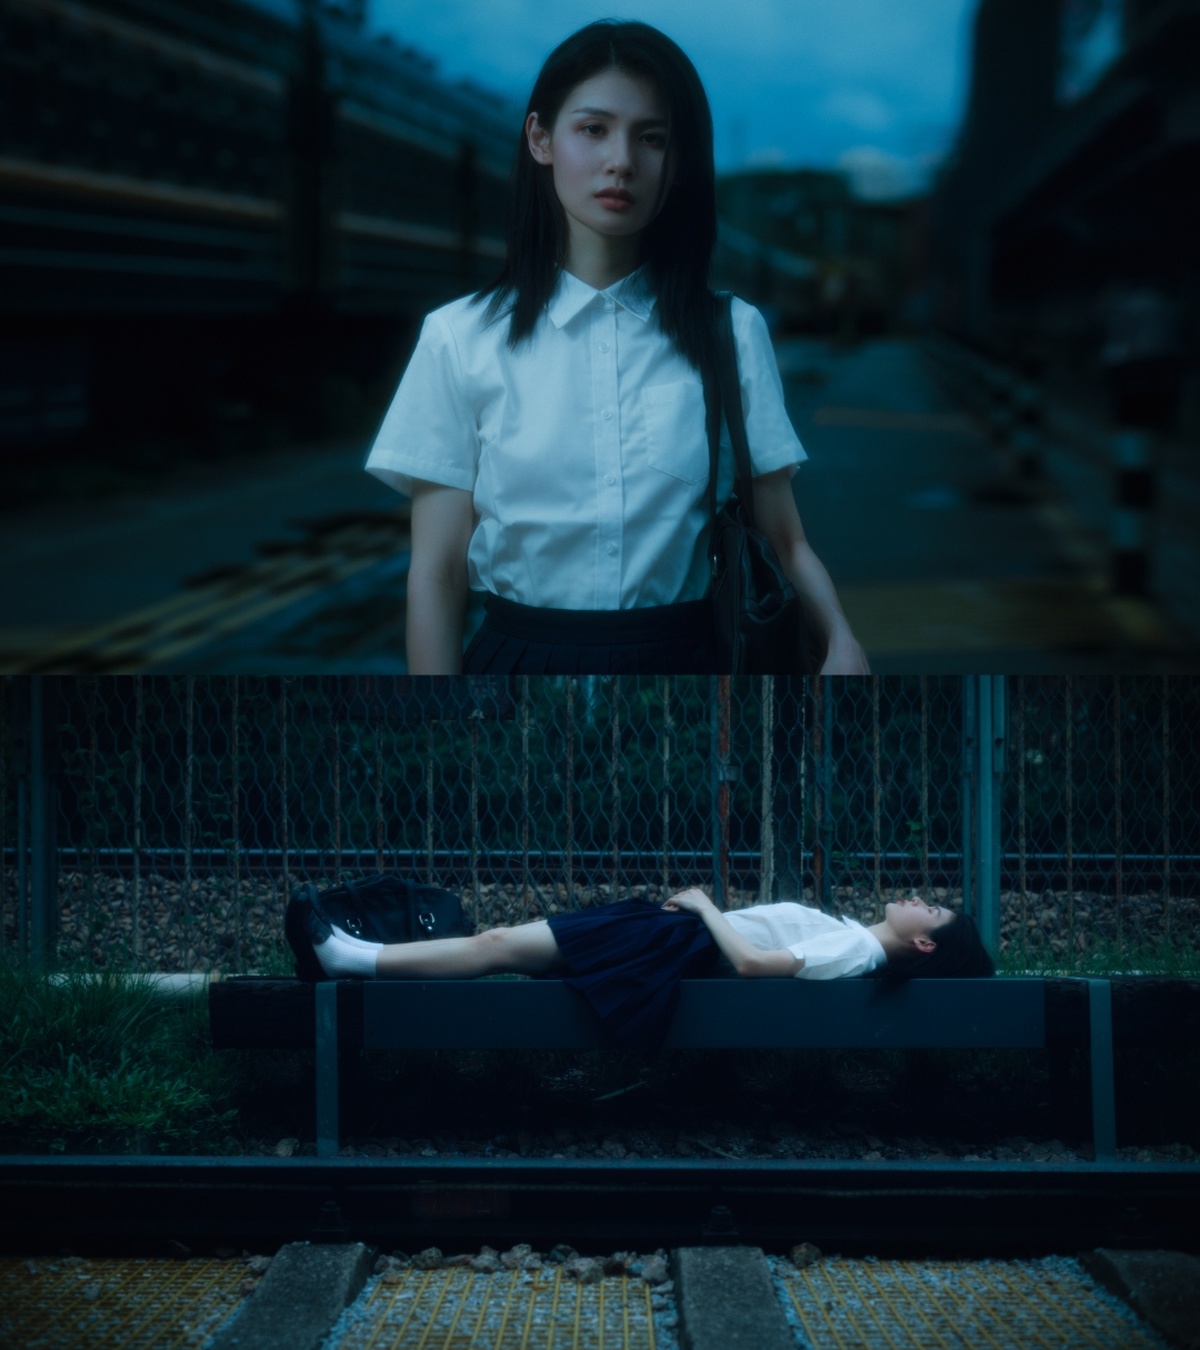 一个穿着白衬衫的年轻女子坐在长凳上 而另一个人躺在铁路轨道上。